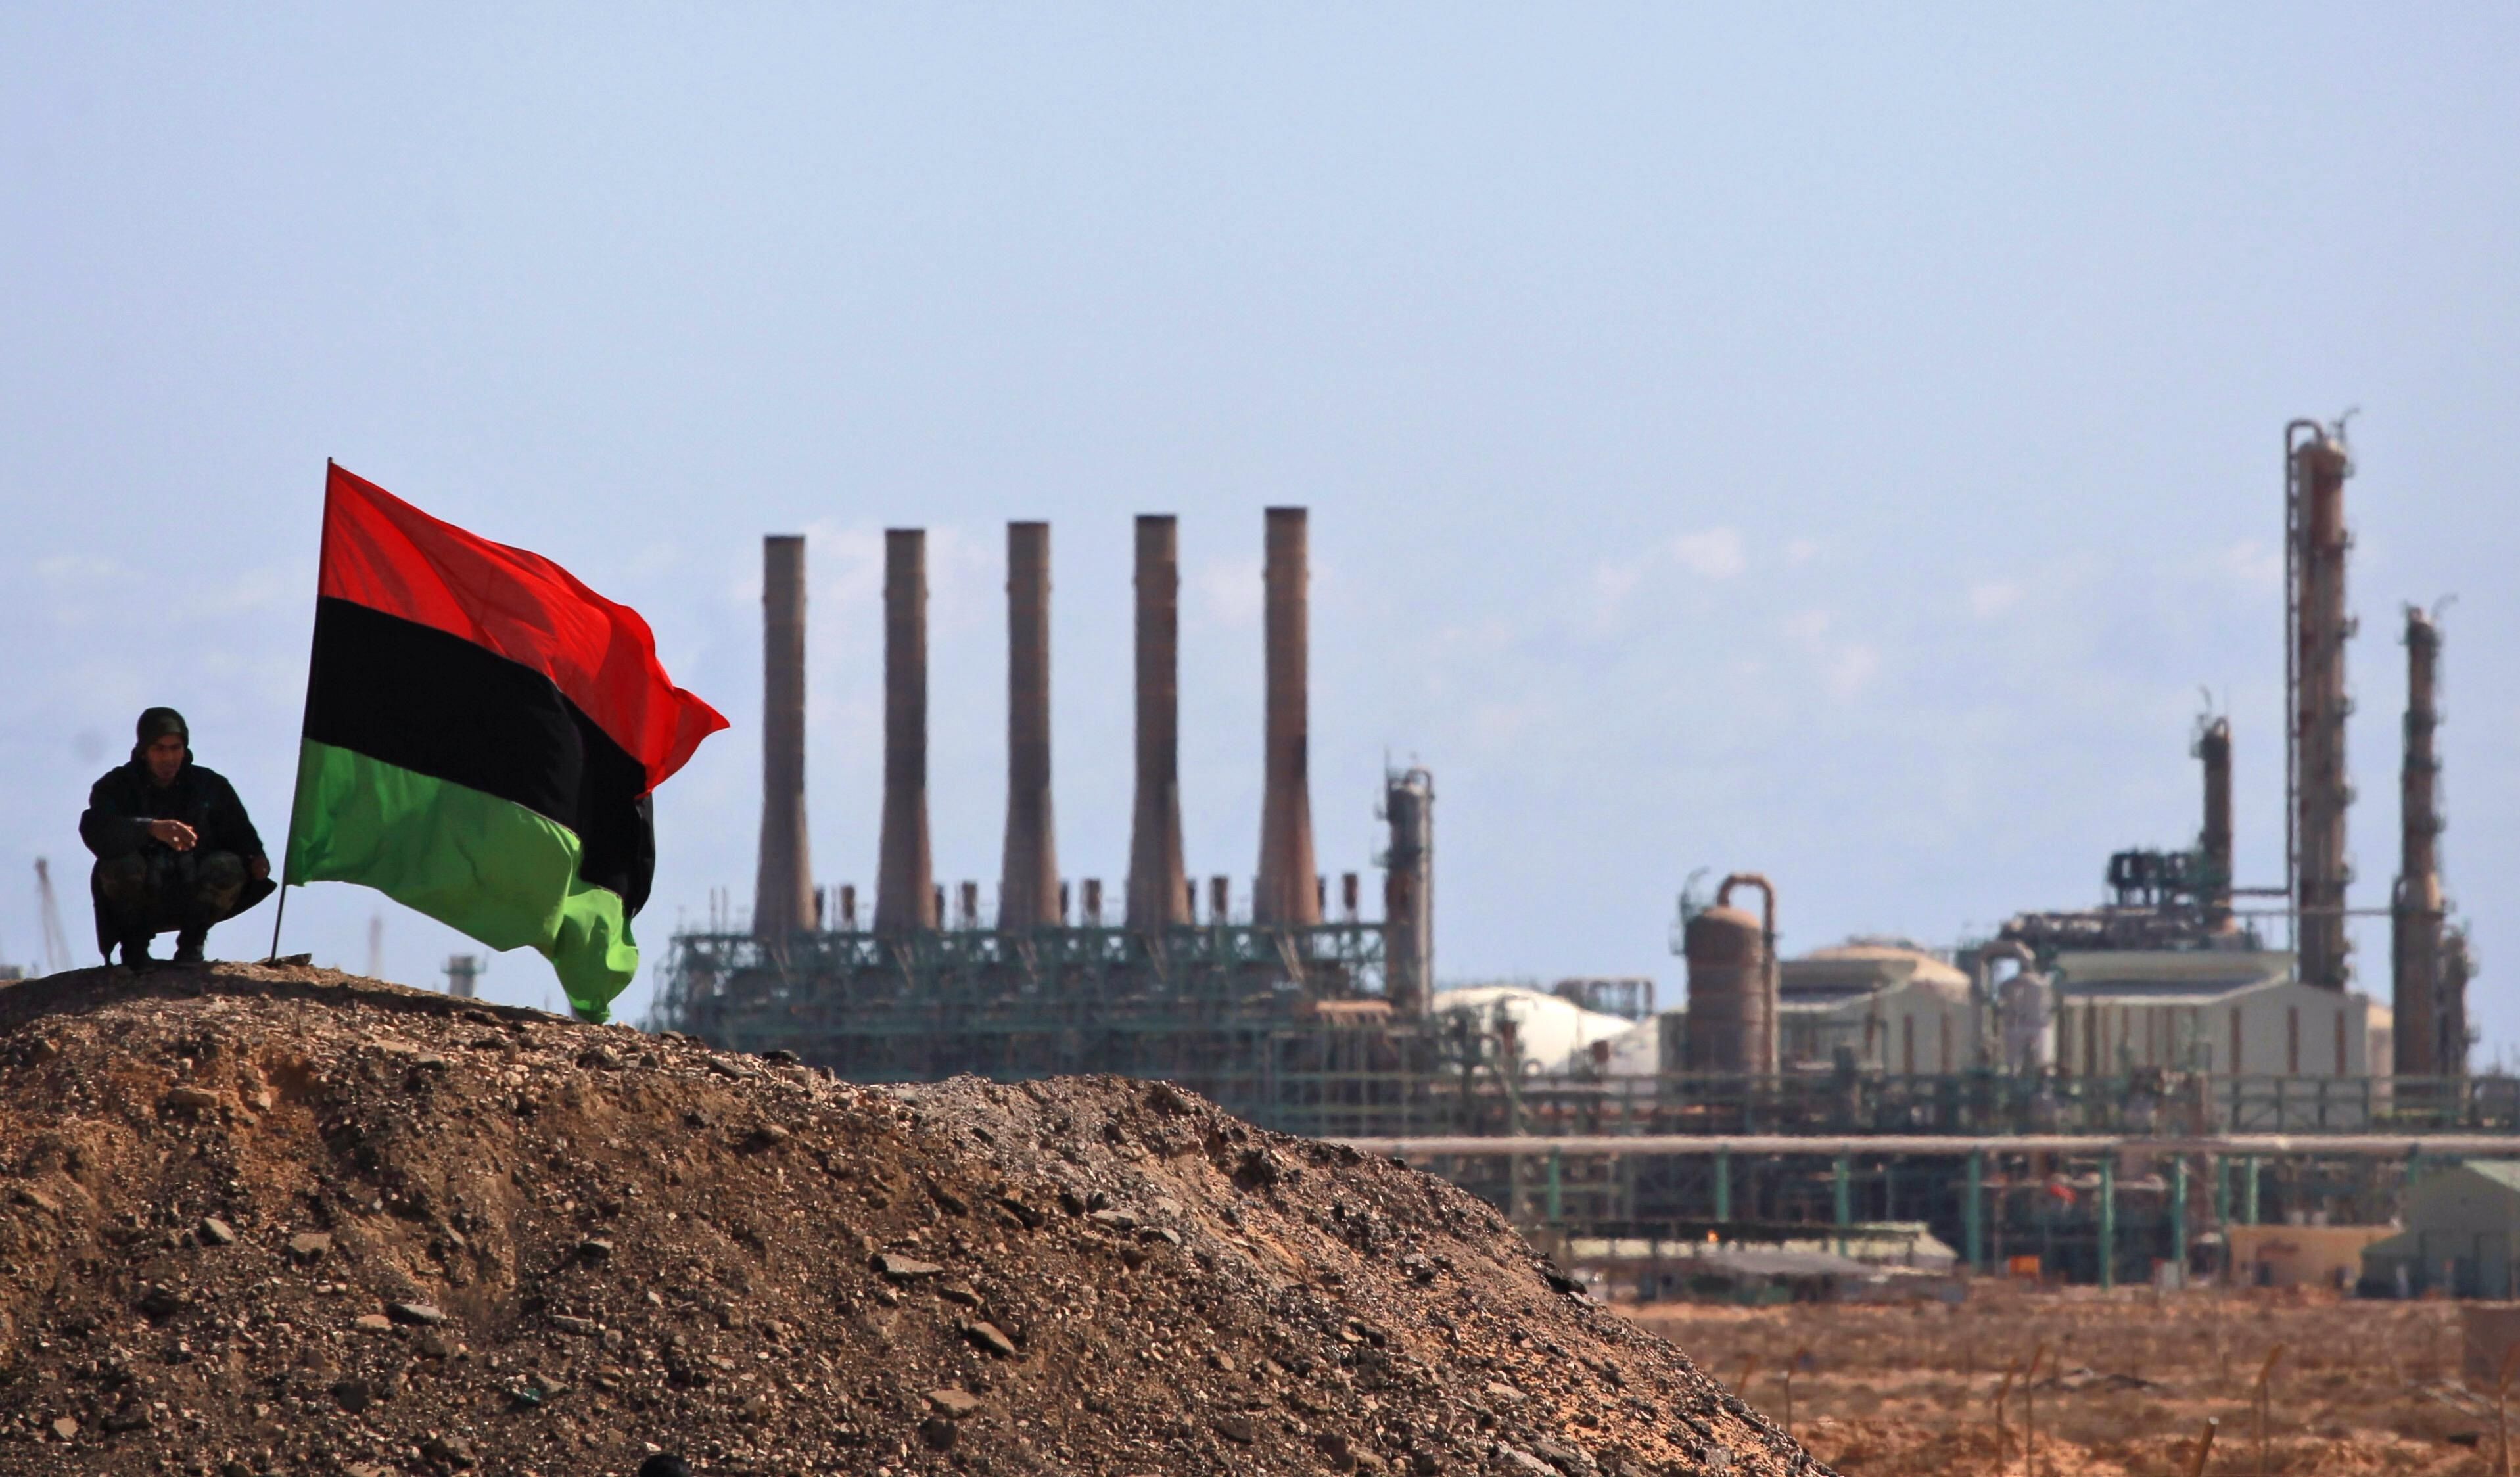 Ливия обвиняет Россию в саботаже добычи нефти: интересные детали